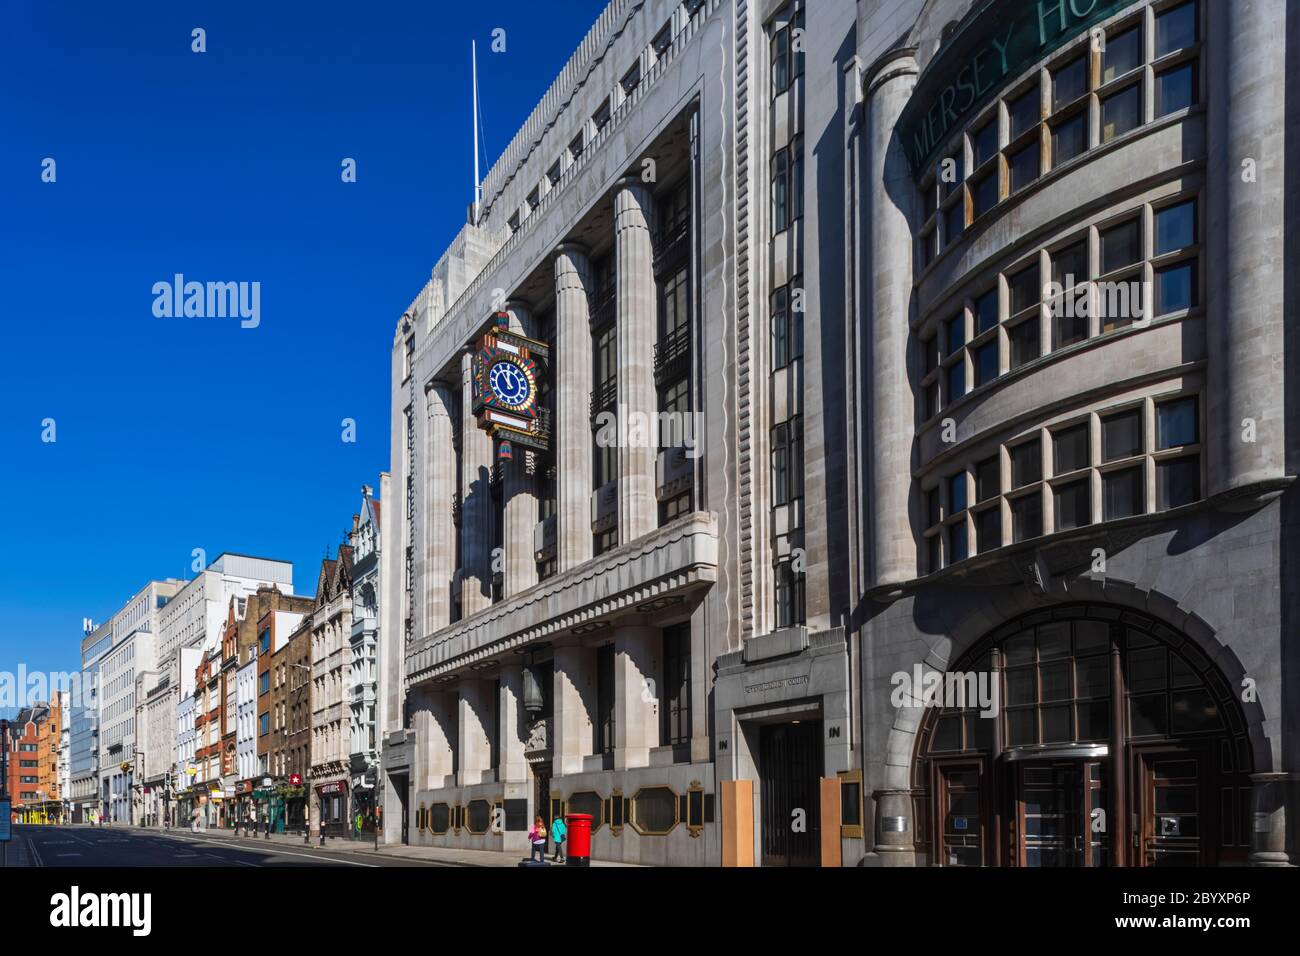 Angleterre, Londres, ville de Londres, Fleet Street, Daily Telegraph Building et Daily Express Building Banque D'Images